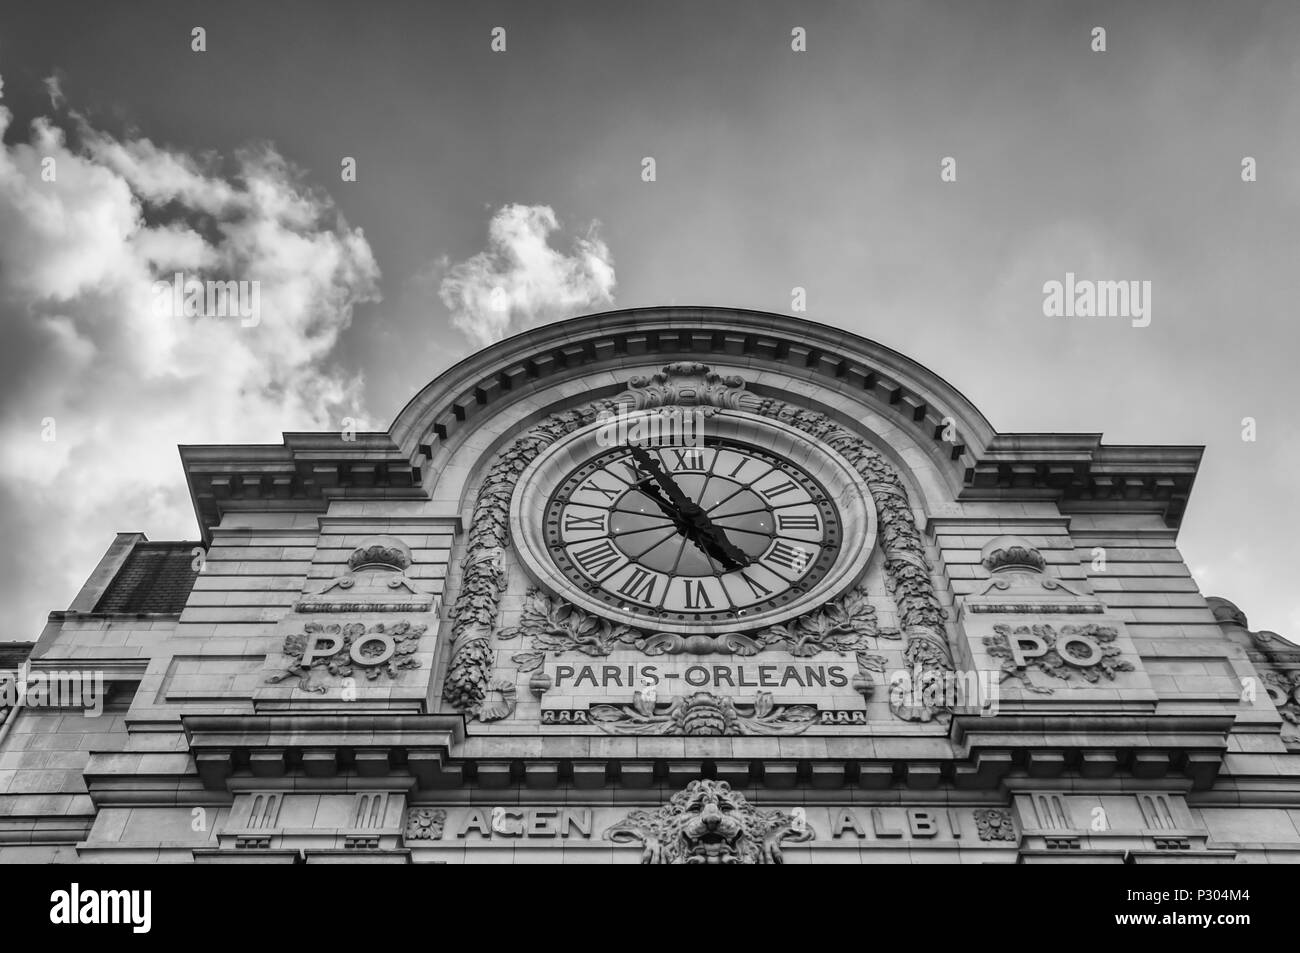 Un buio, drammatico, immagine dell'orologio sulla sommità del Musée d'Orsay a Parigi. In precedenza la Gare d'Orsay stazione ferroviaria con treni che circolano tra Parigi di Orleans, è oggi un museo. Impostare contro un cielo nuvoloso con copia spazio. Foto Stock